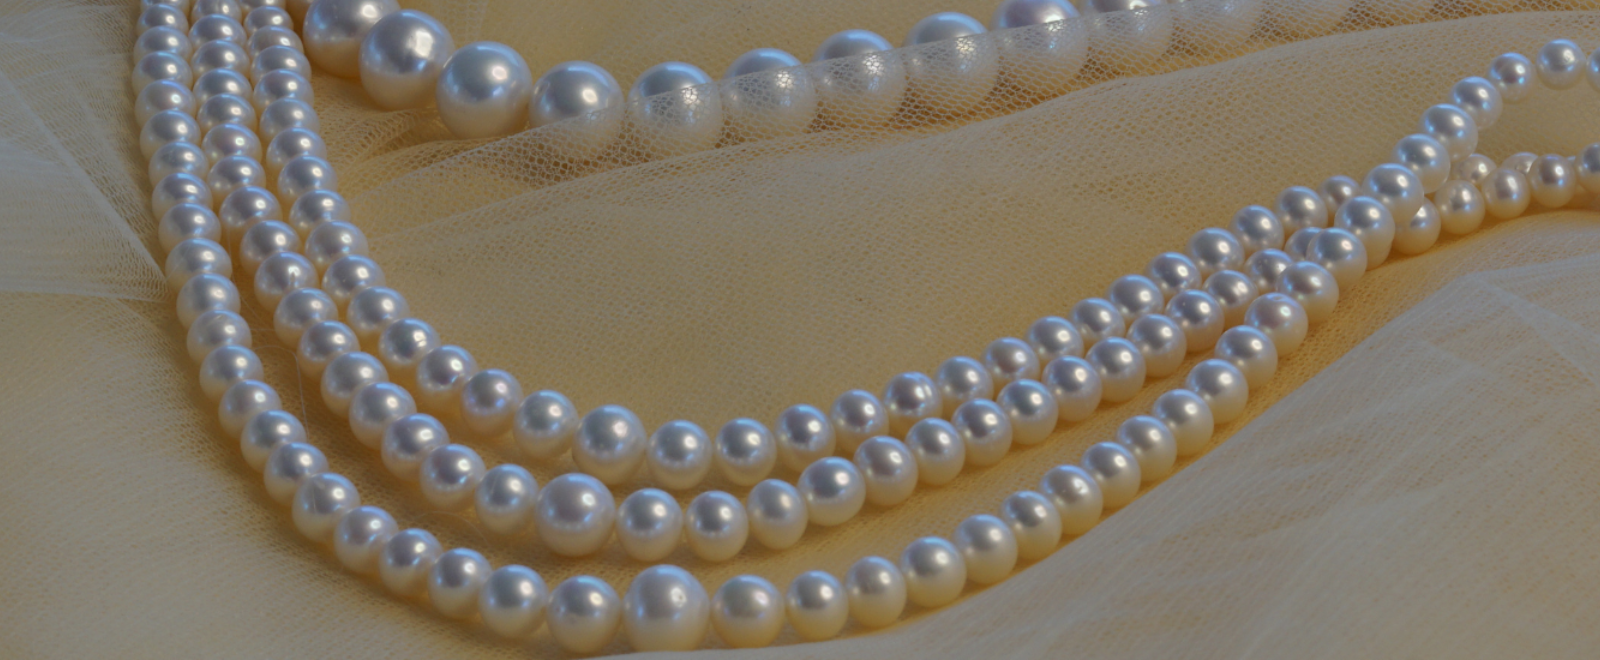 Mangatrai Pearls